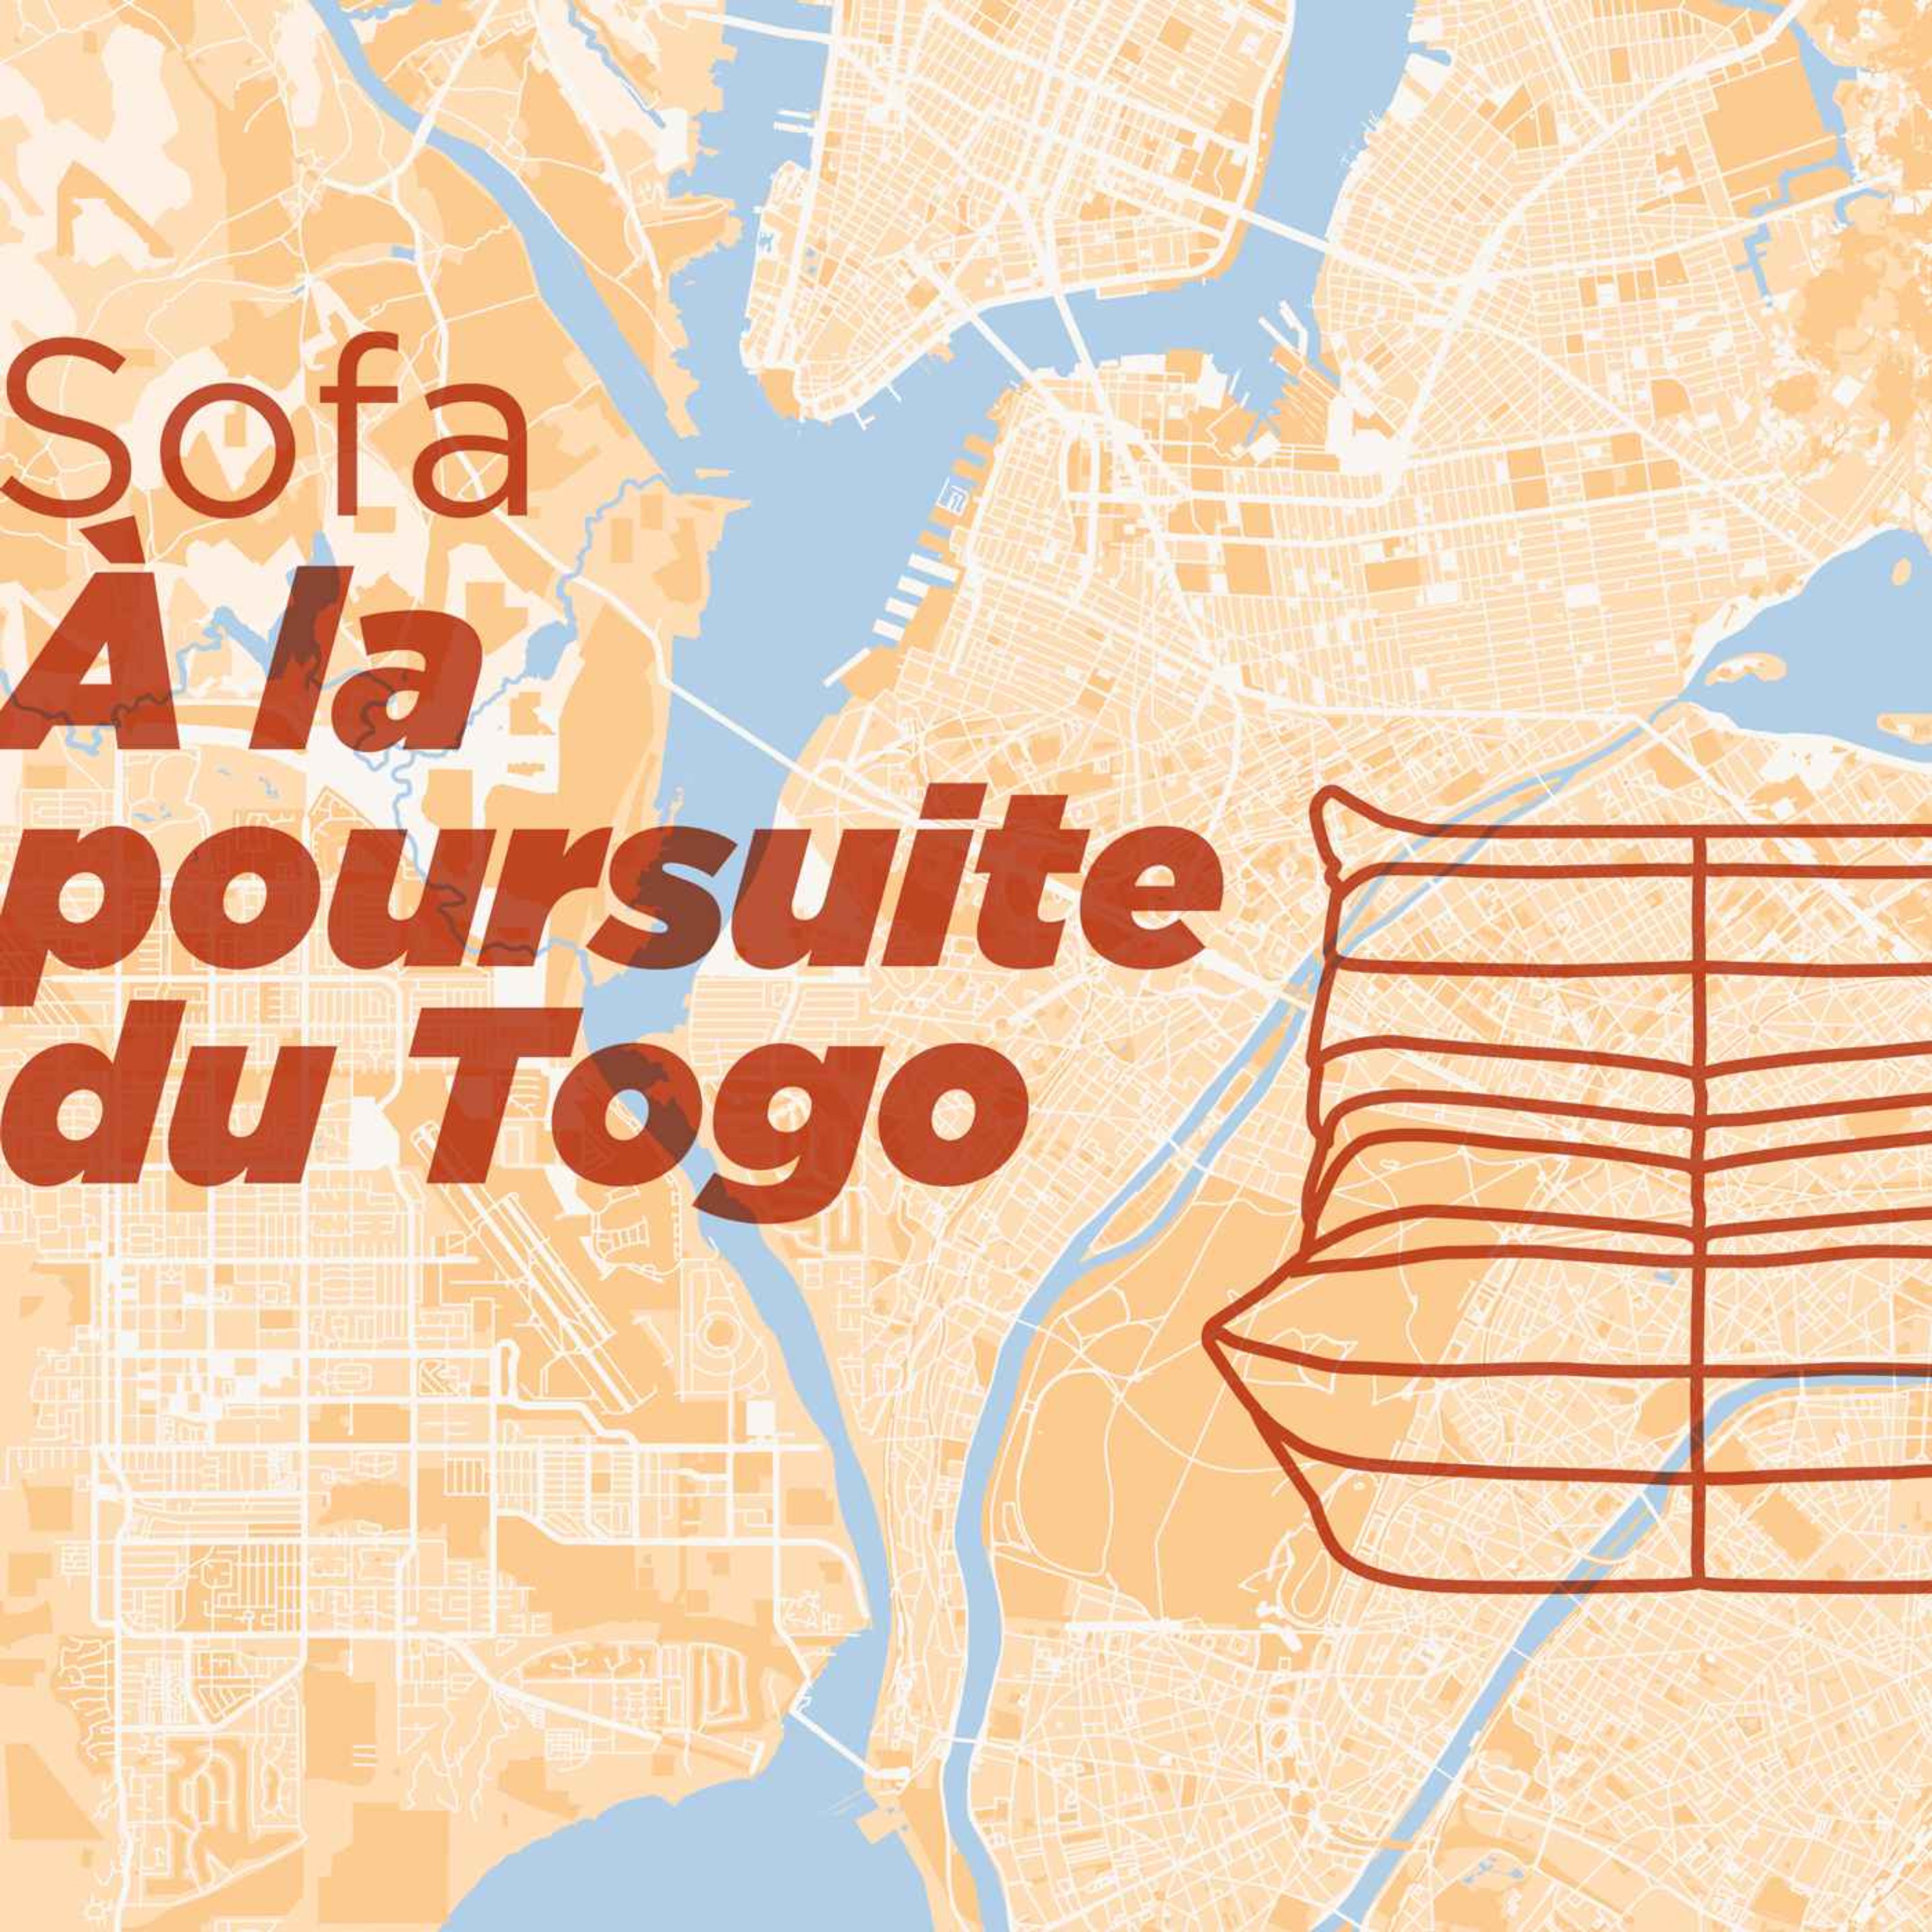 Sofa, À la poursuite du Togo